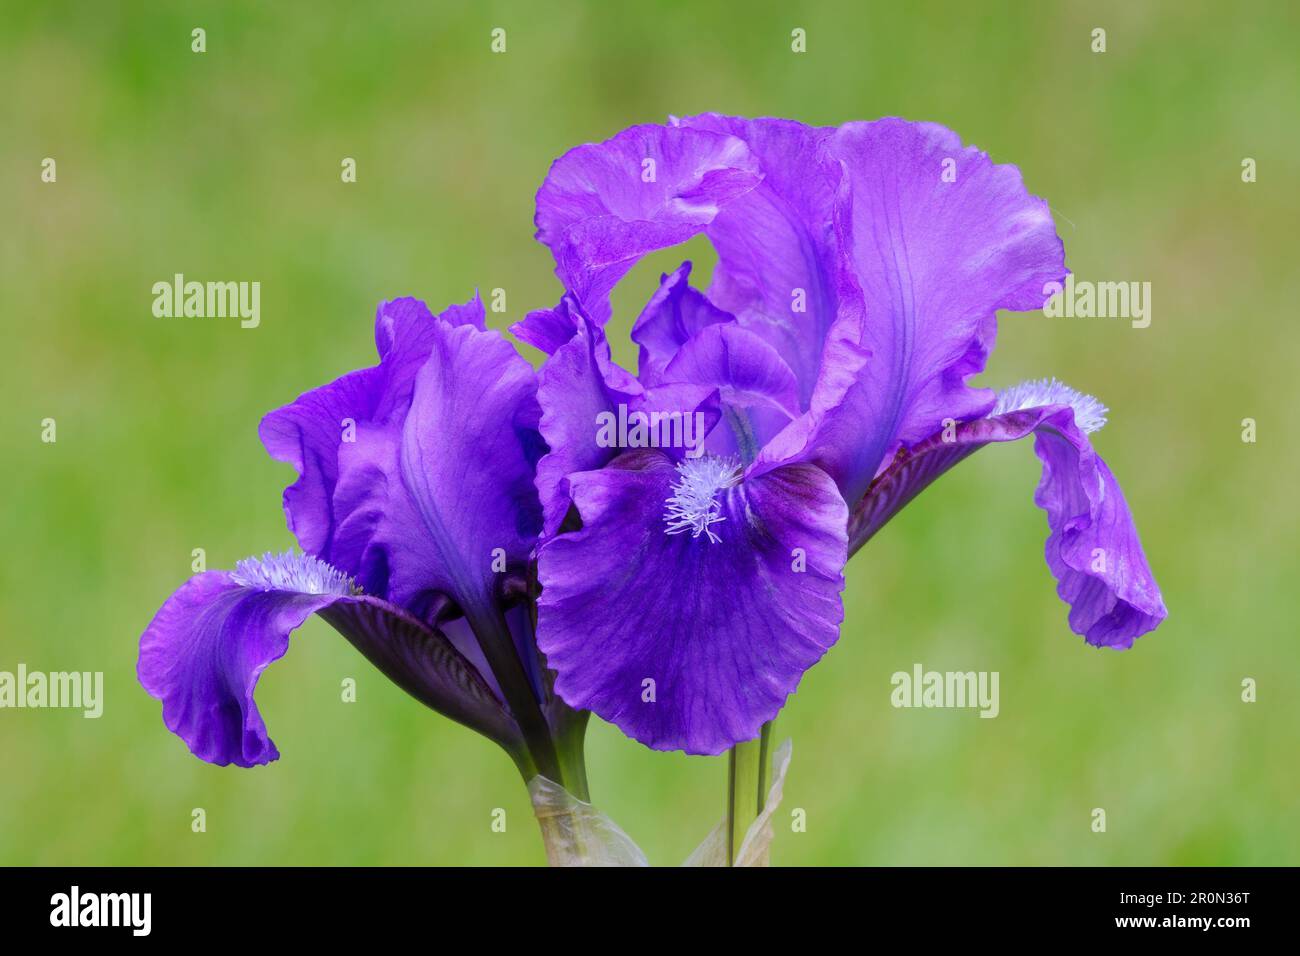 Zwerg Iris pumila, wahrhaft violette Blume, Nahaufnahme. Unscharfer natürlicher grüner Hintergrund. Ziergarten Trencin, Slowakei Stockfoto